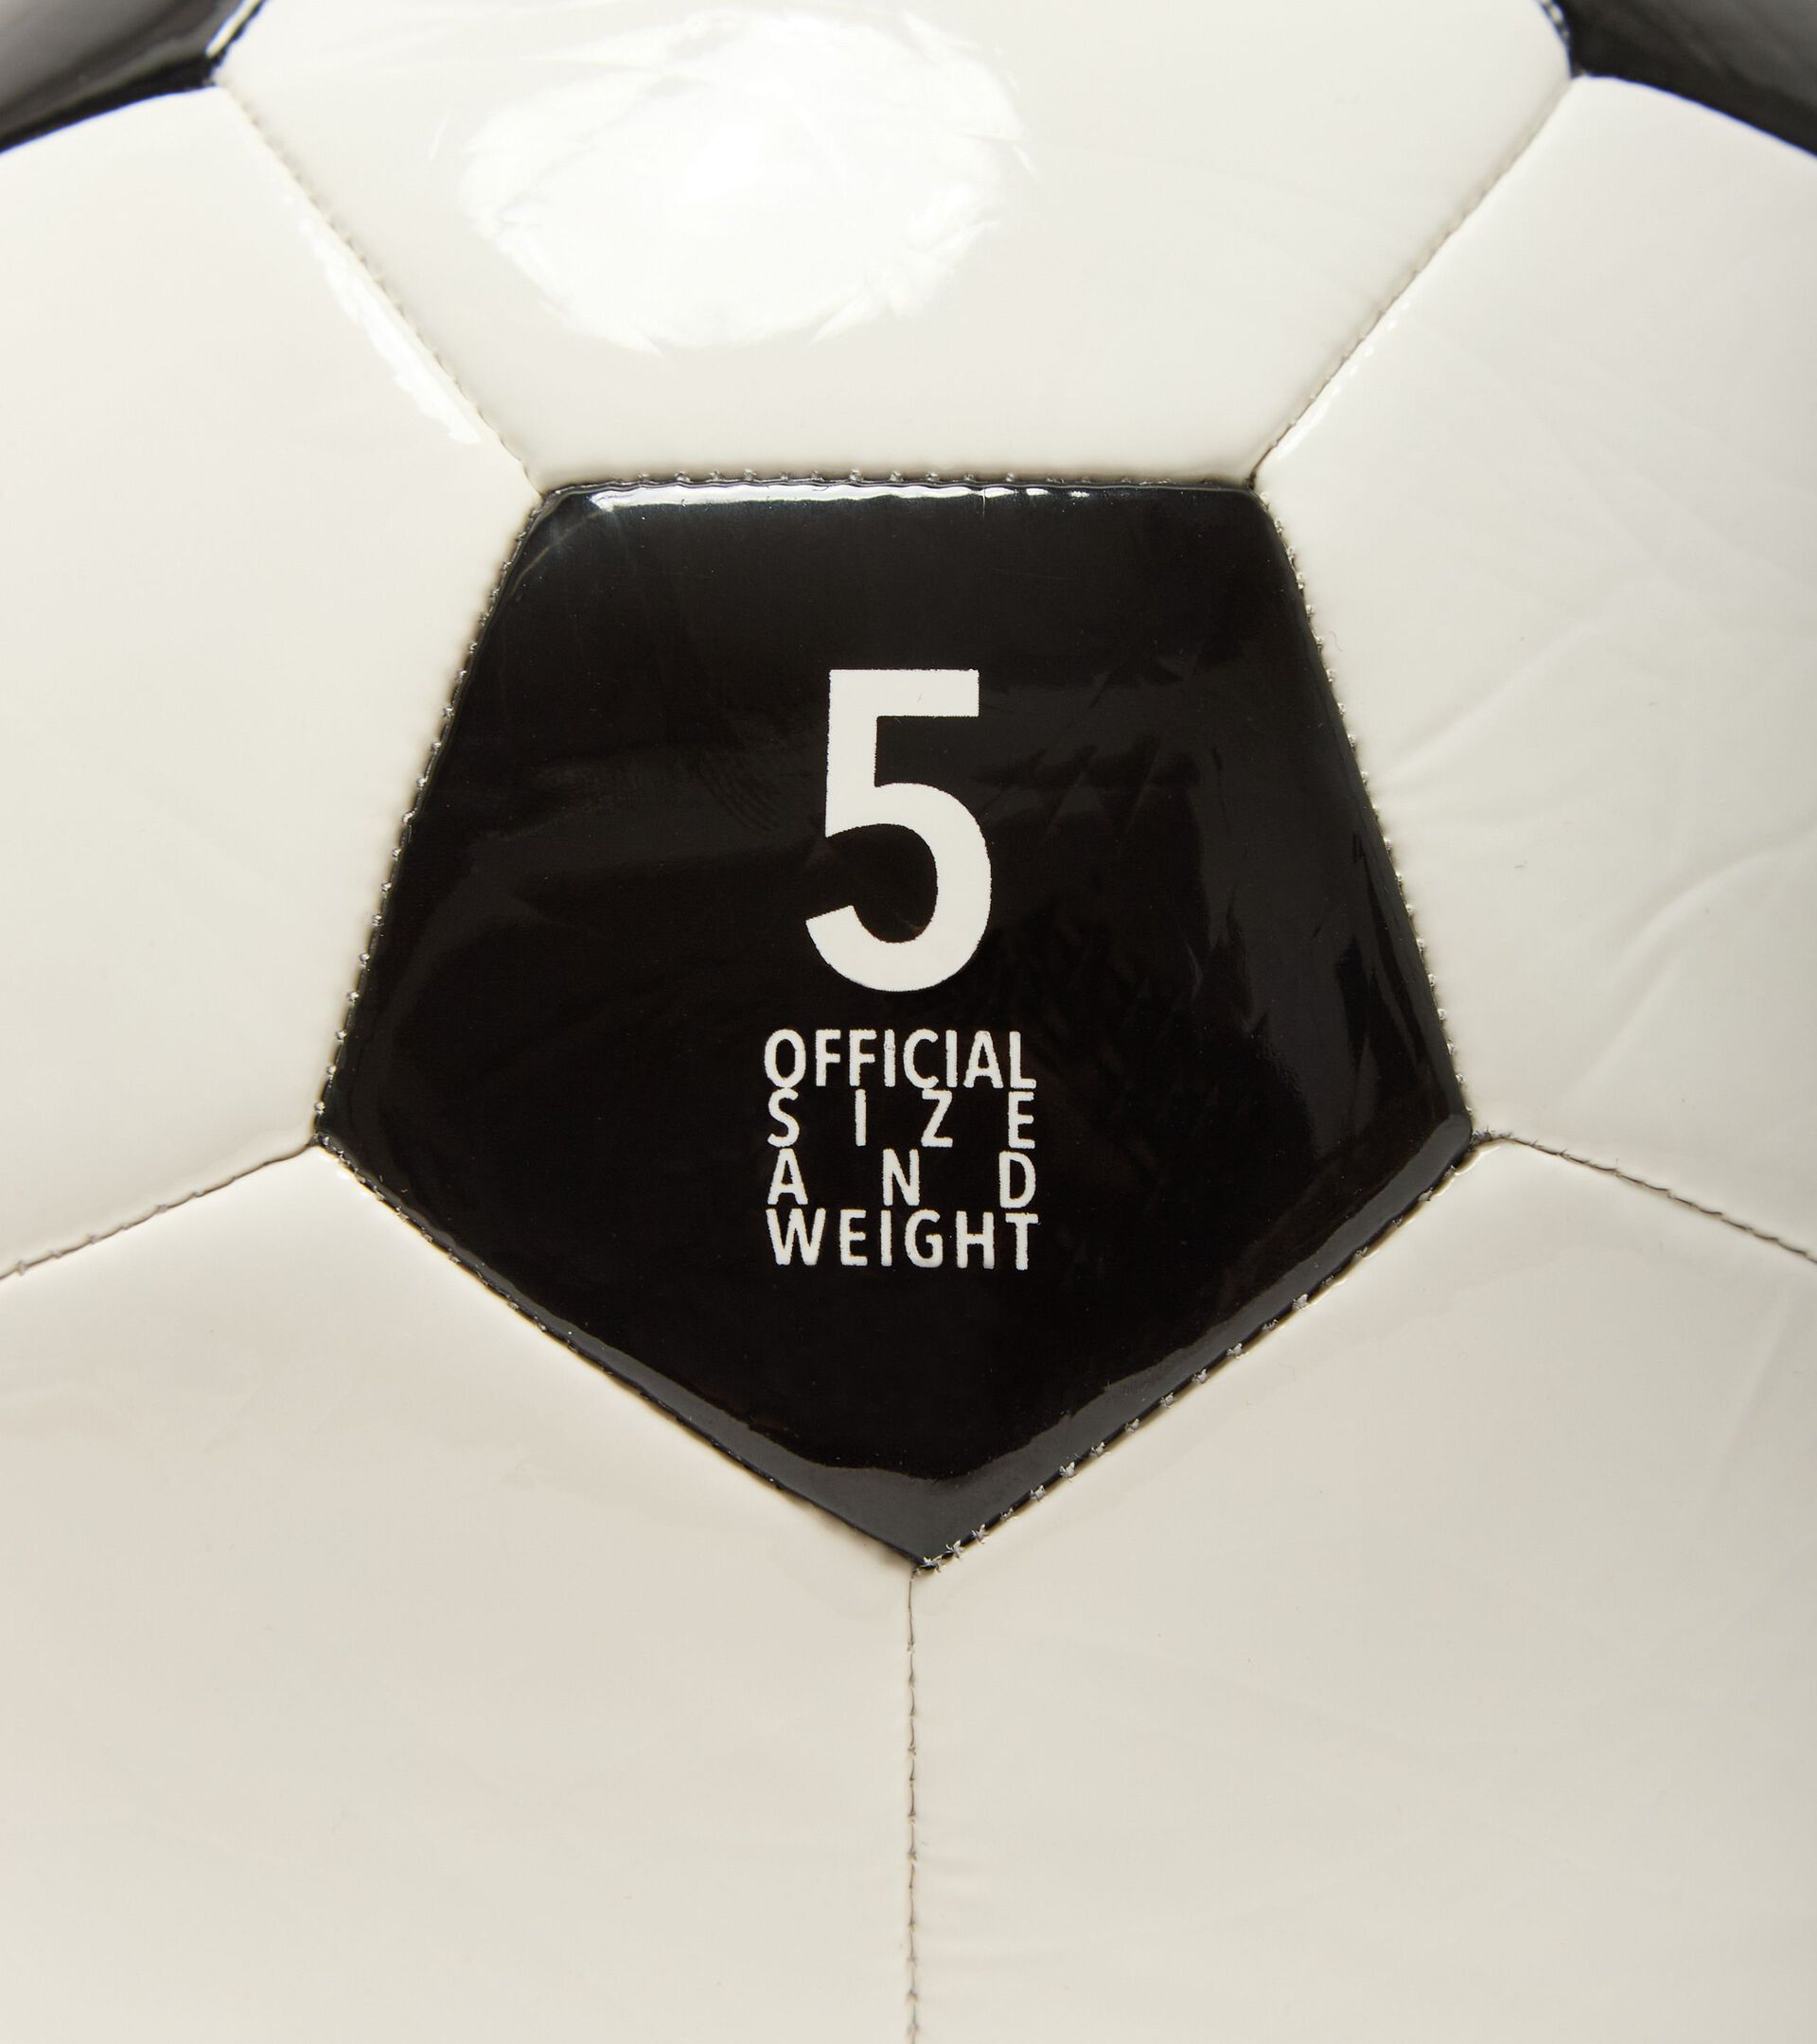 Pallone da calcio - taglia 5 SQUADRA 5 BIANCO OTTICO/NERO - Diadora